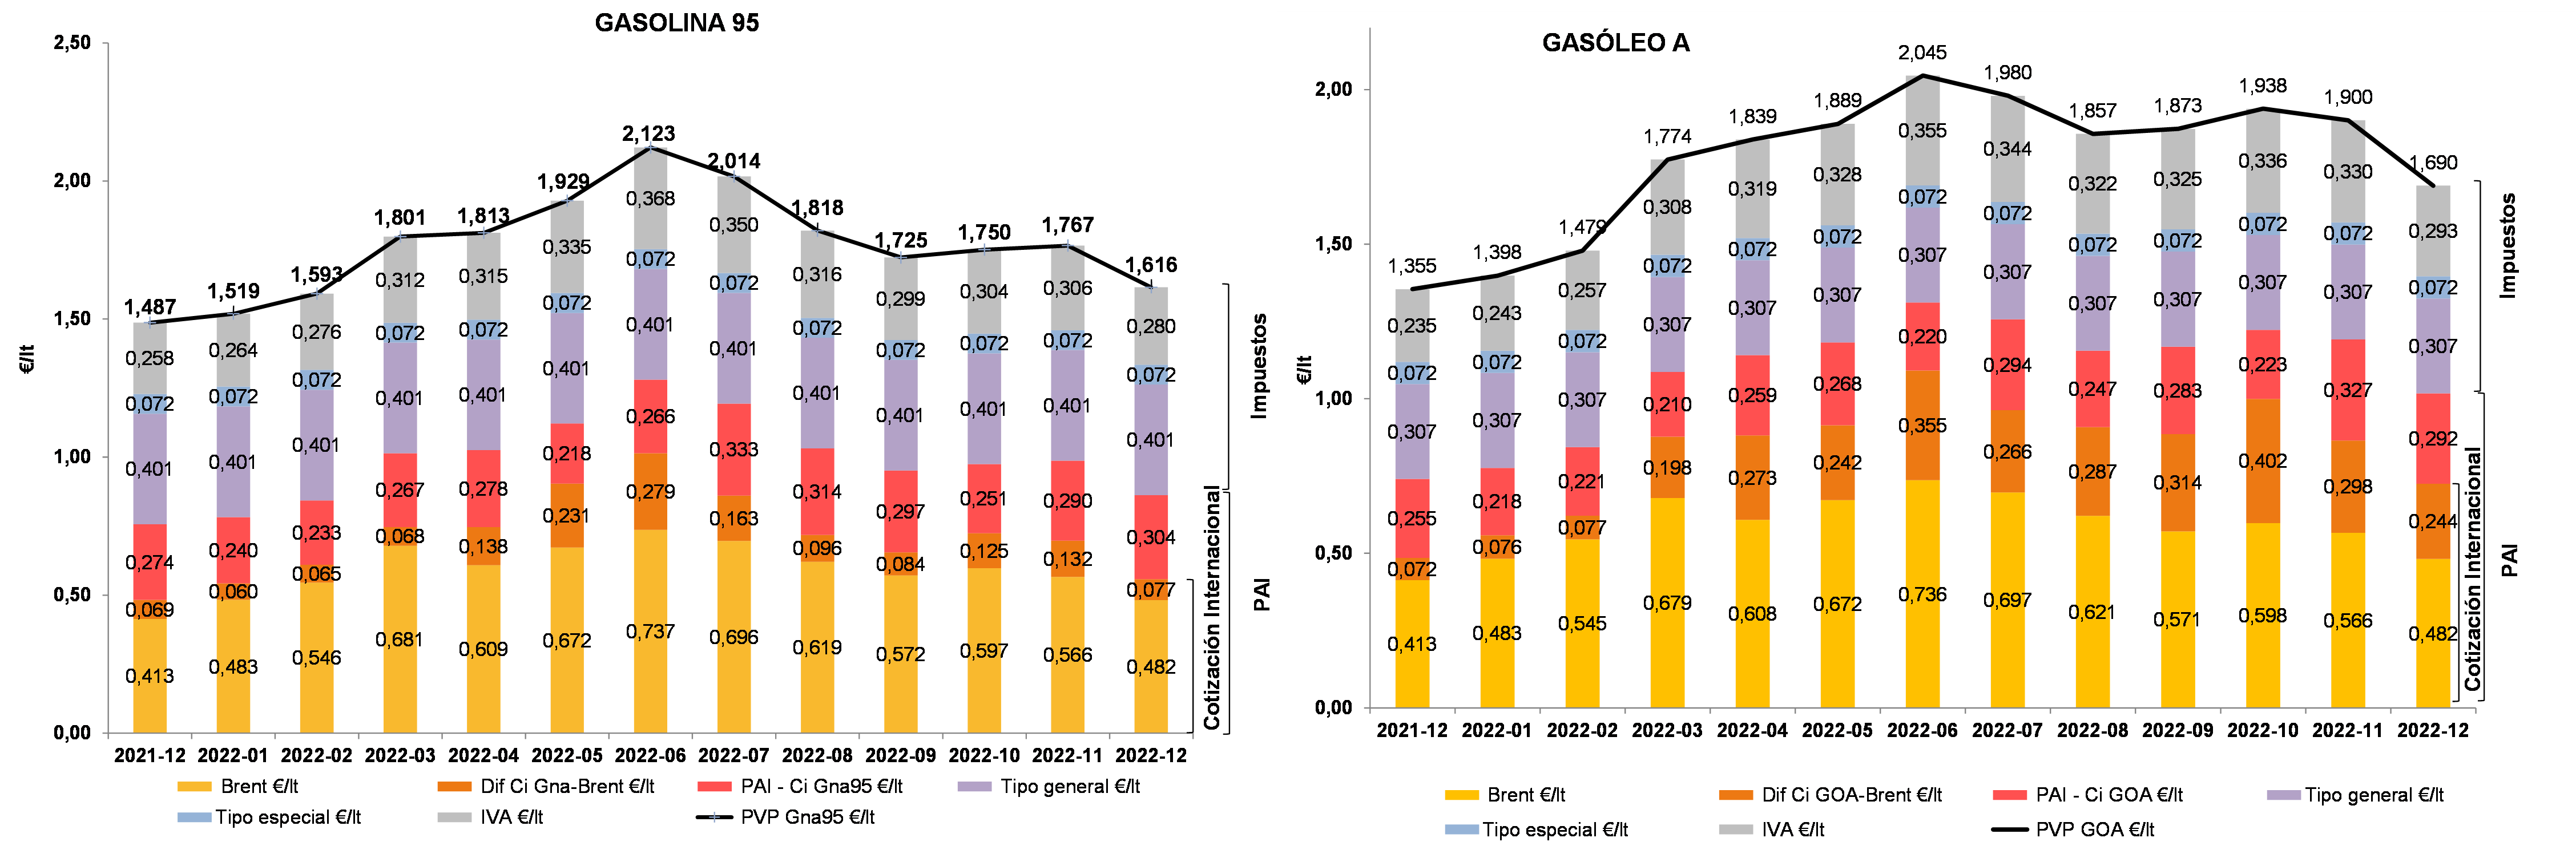 Evolución del precio del gasóleo a y de la gasolina